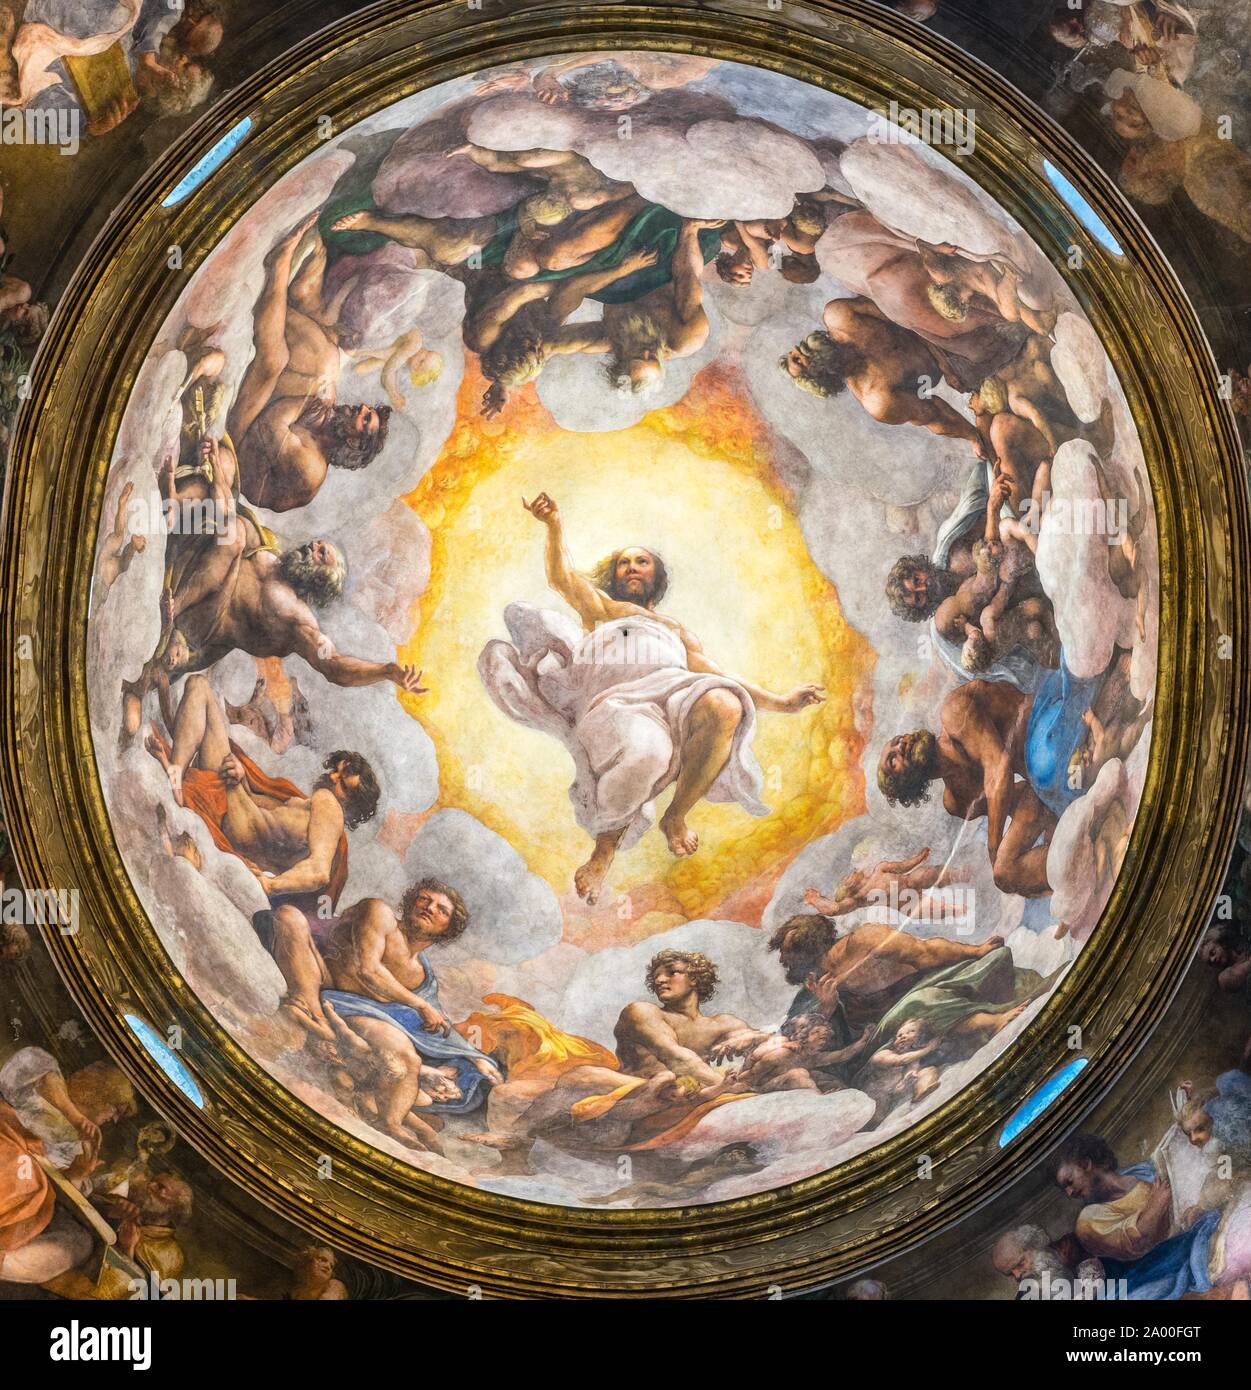 Fresque au plafond, la vision de saint Jean à Patmos, monastère de San Giovanni Evangelista, Parme, Emilie-Romagne, Italie Banque D'Images